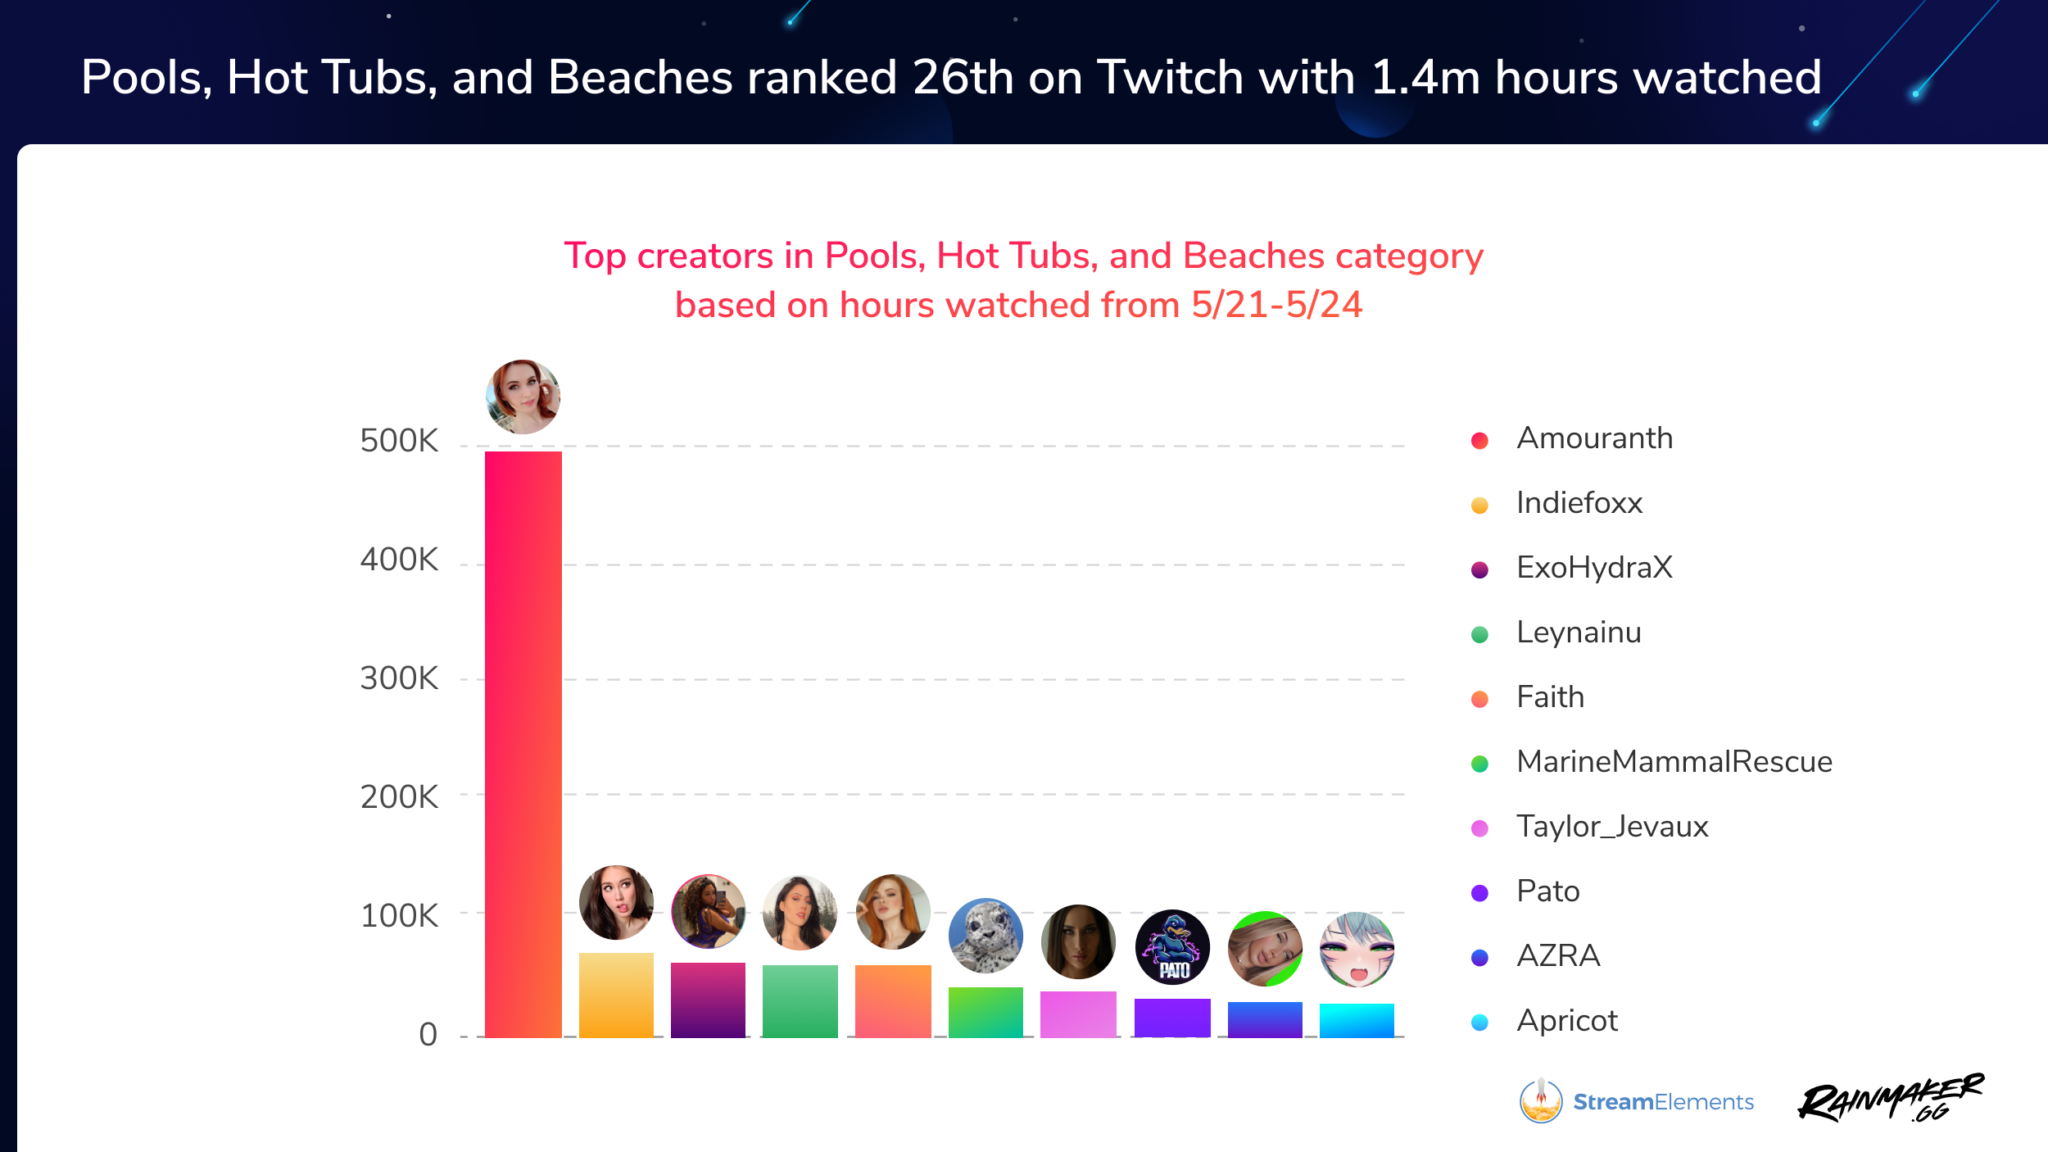 Kênh Twitch Hot Tub mới nổi của Twitch đạt 1,4 triệu giờ được xem trong vòng 4 ngày gần đây - Ảnh 2.